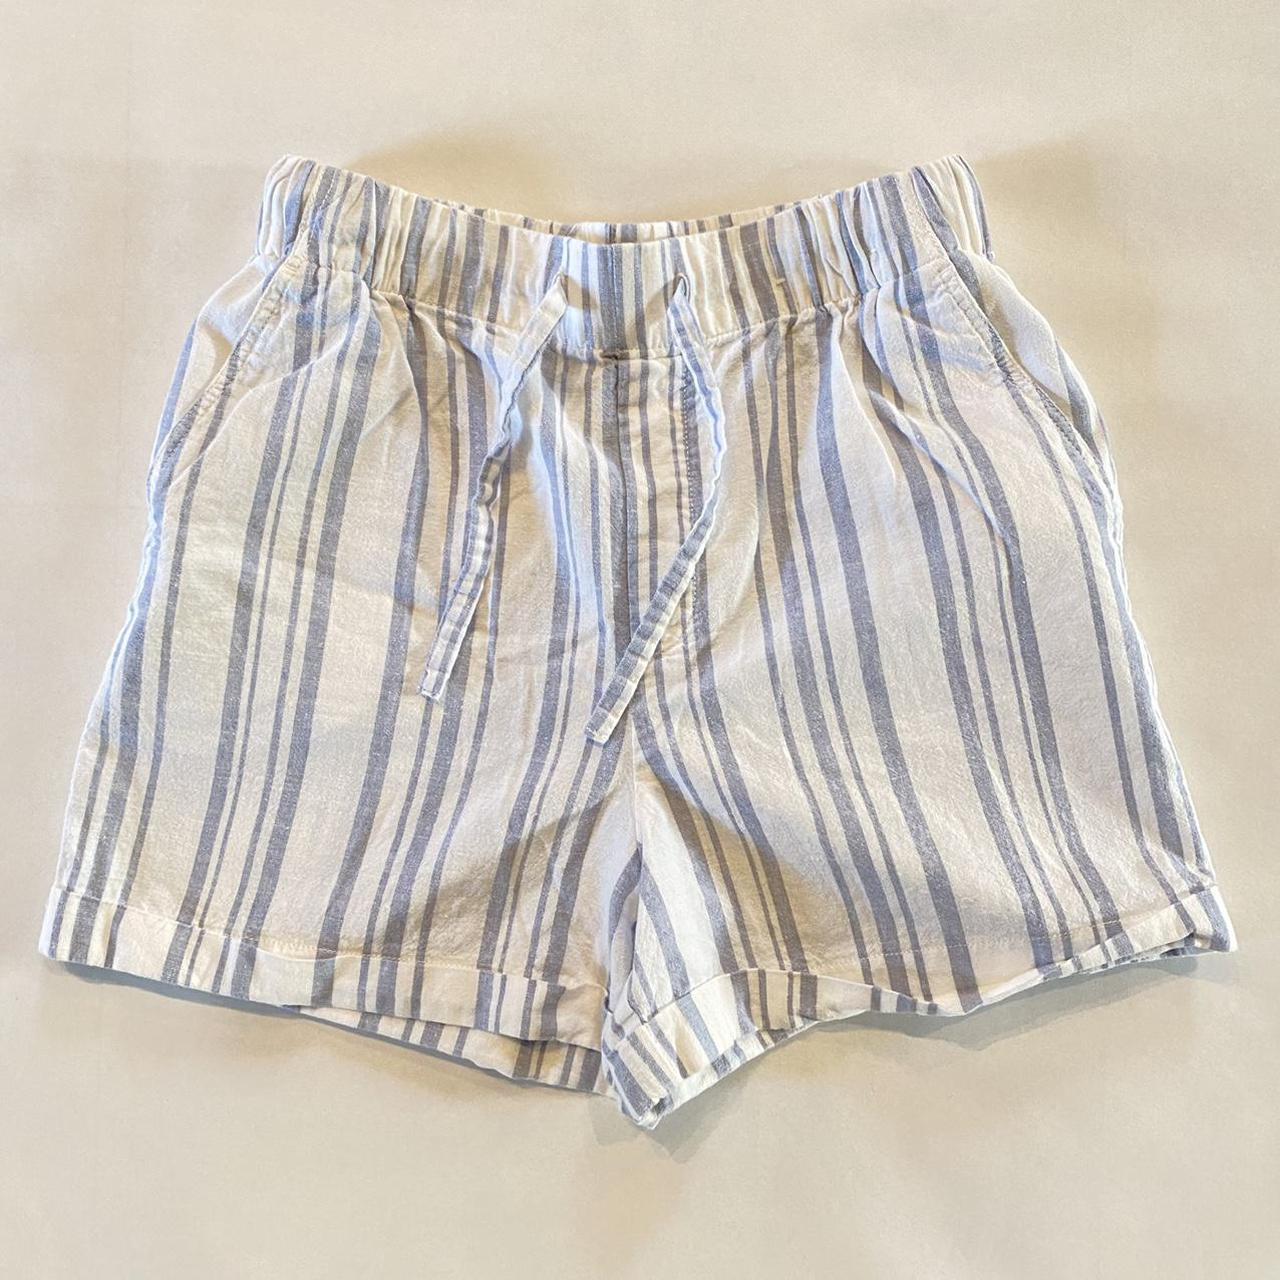 Blue Stripe High Waisted Linen Shorts with an... - Depop